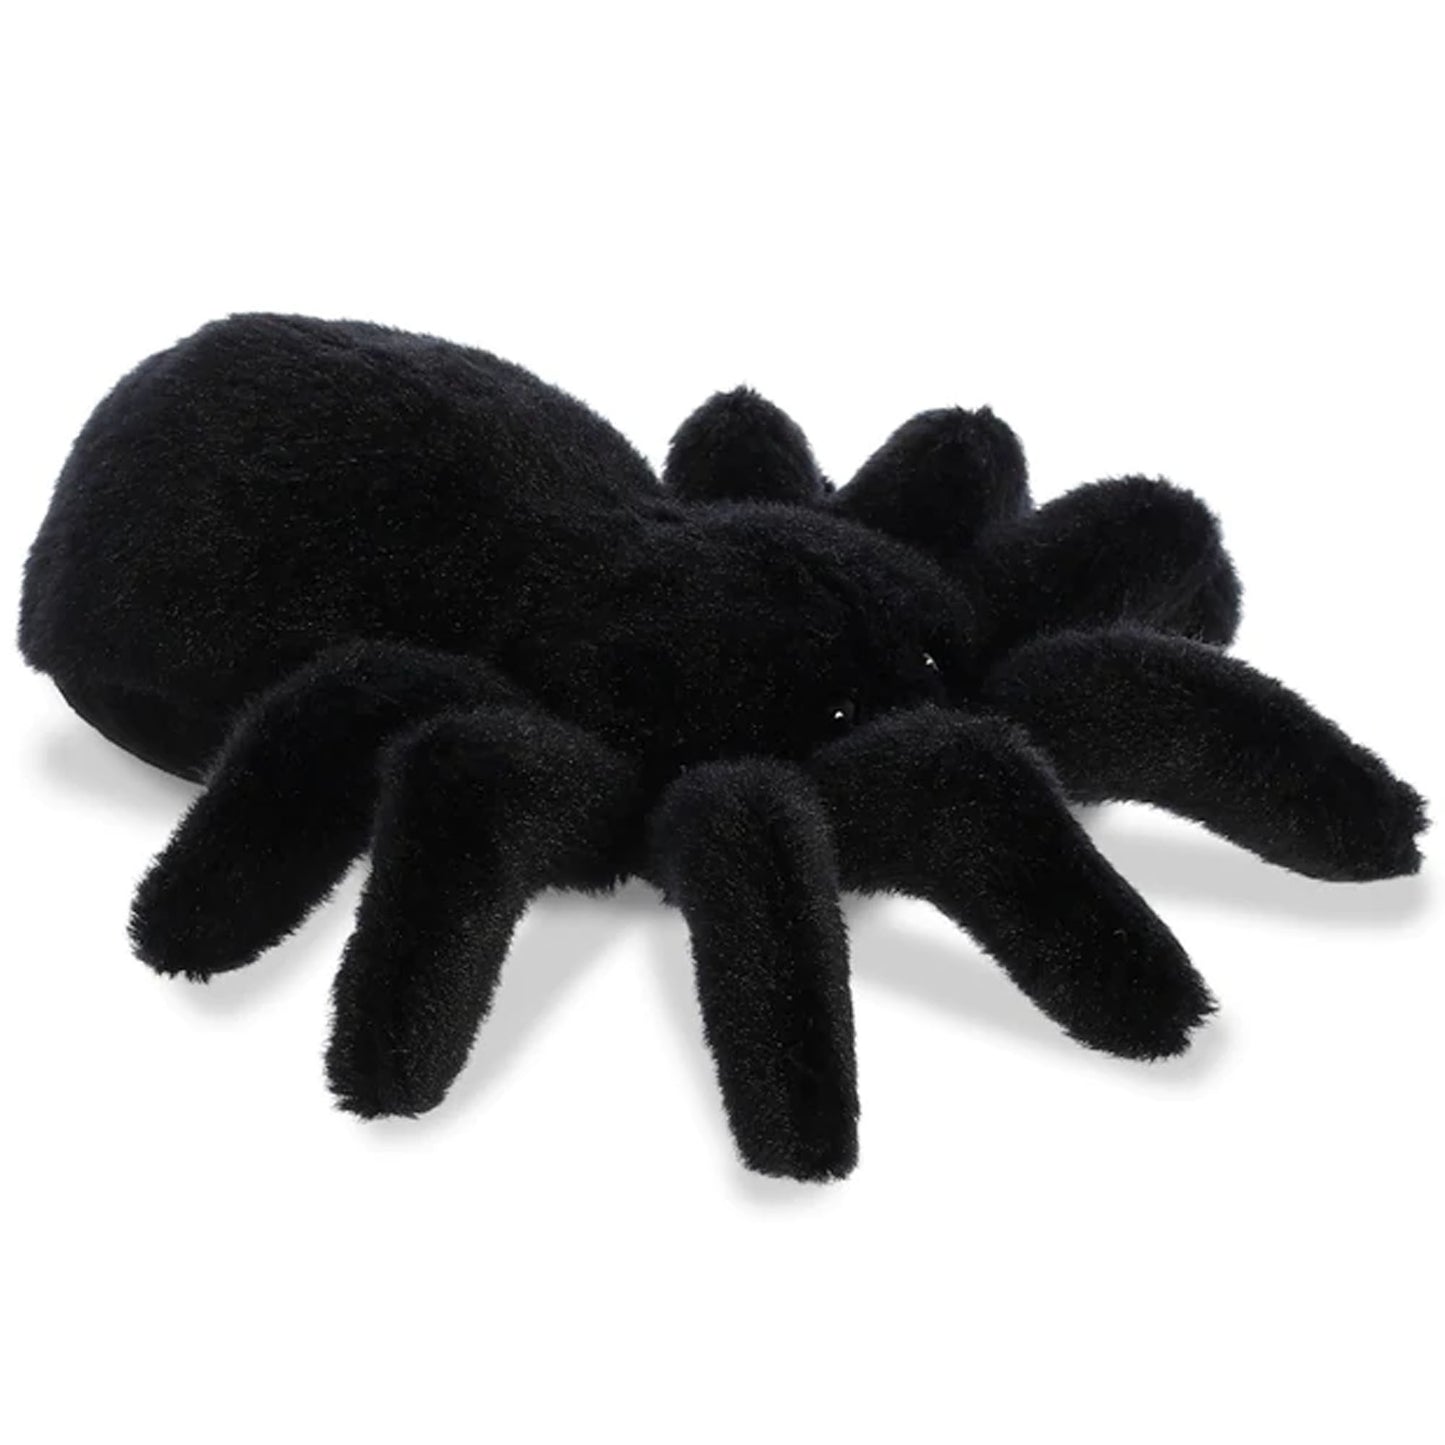 Black Tarantula Spider Flopsie Soft Toy (Side View) | Happy Piranha